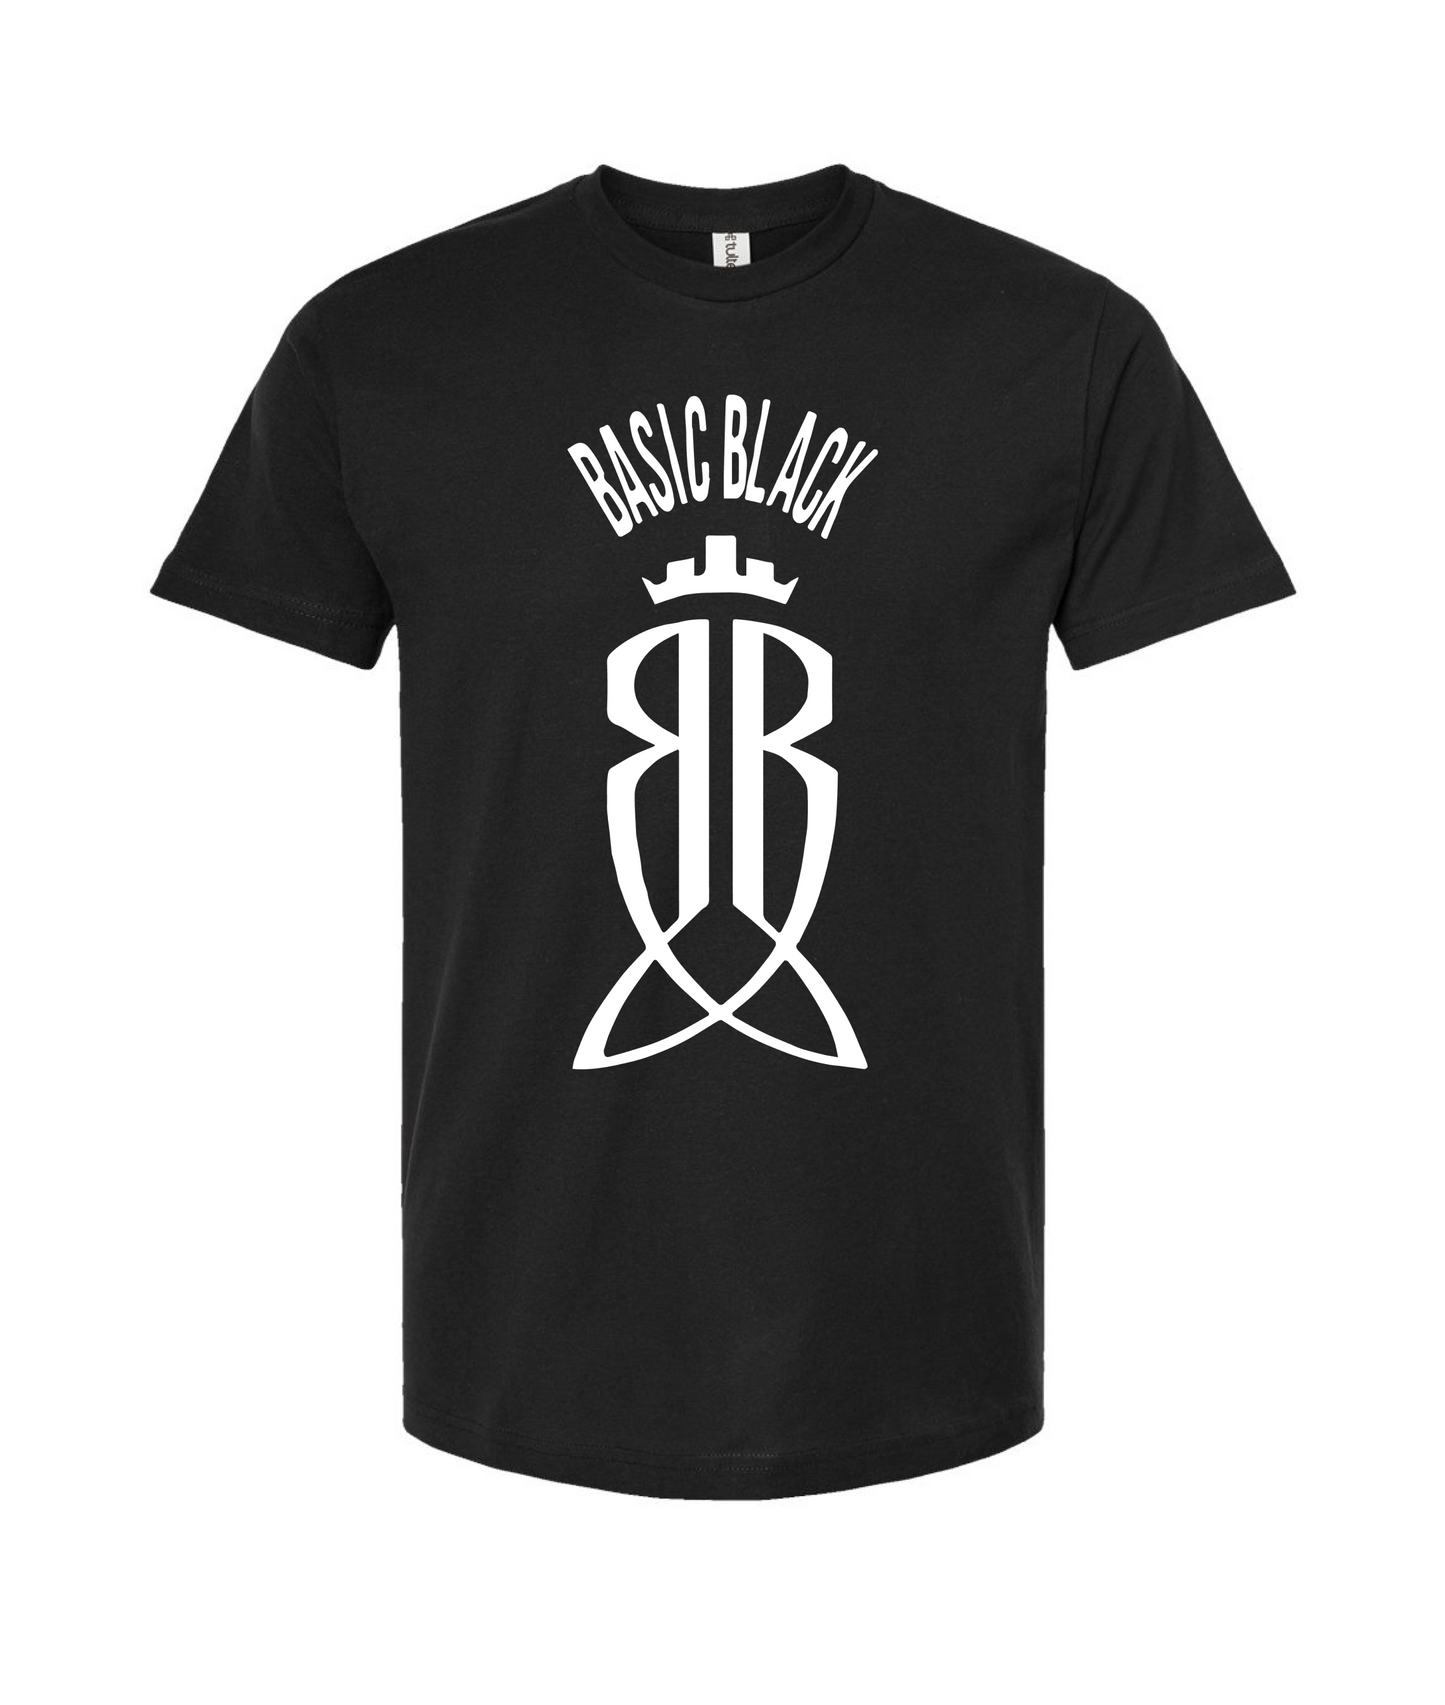 Basic Black - Logo - Black T-Shirt